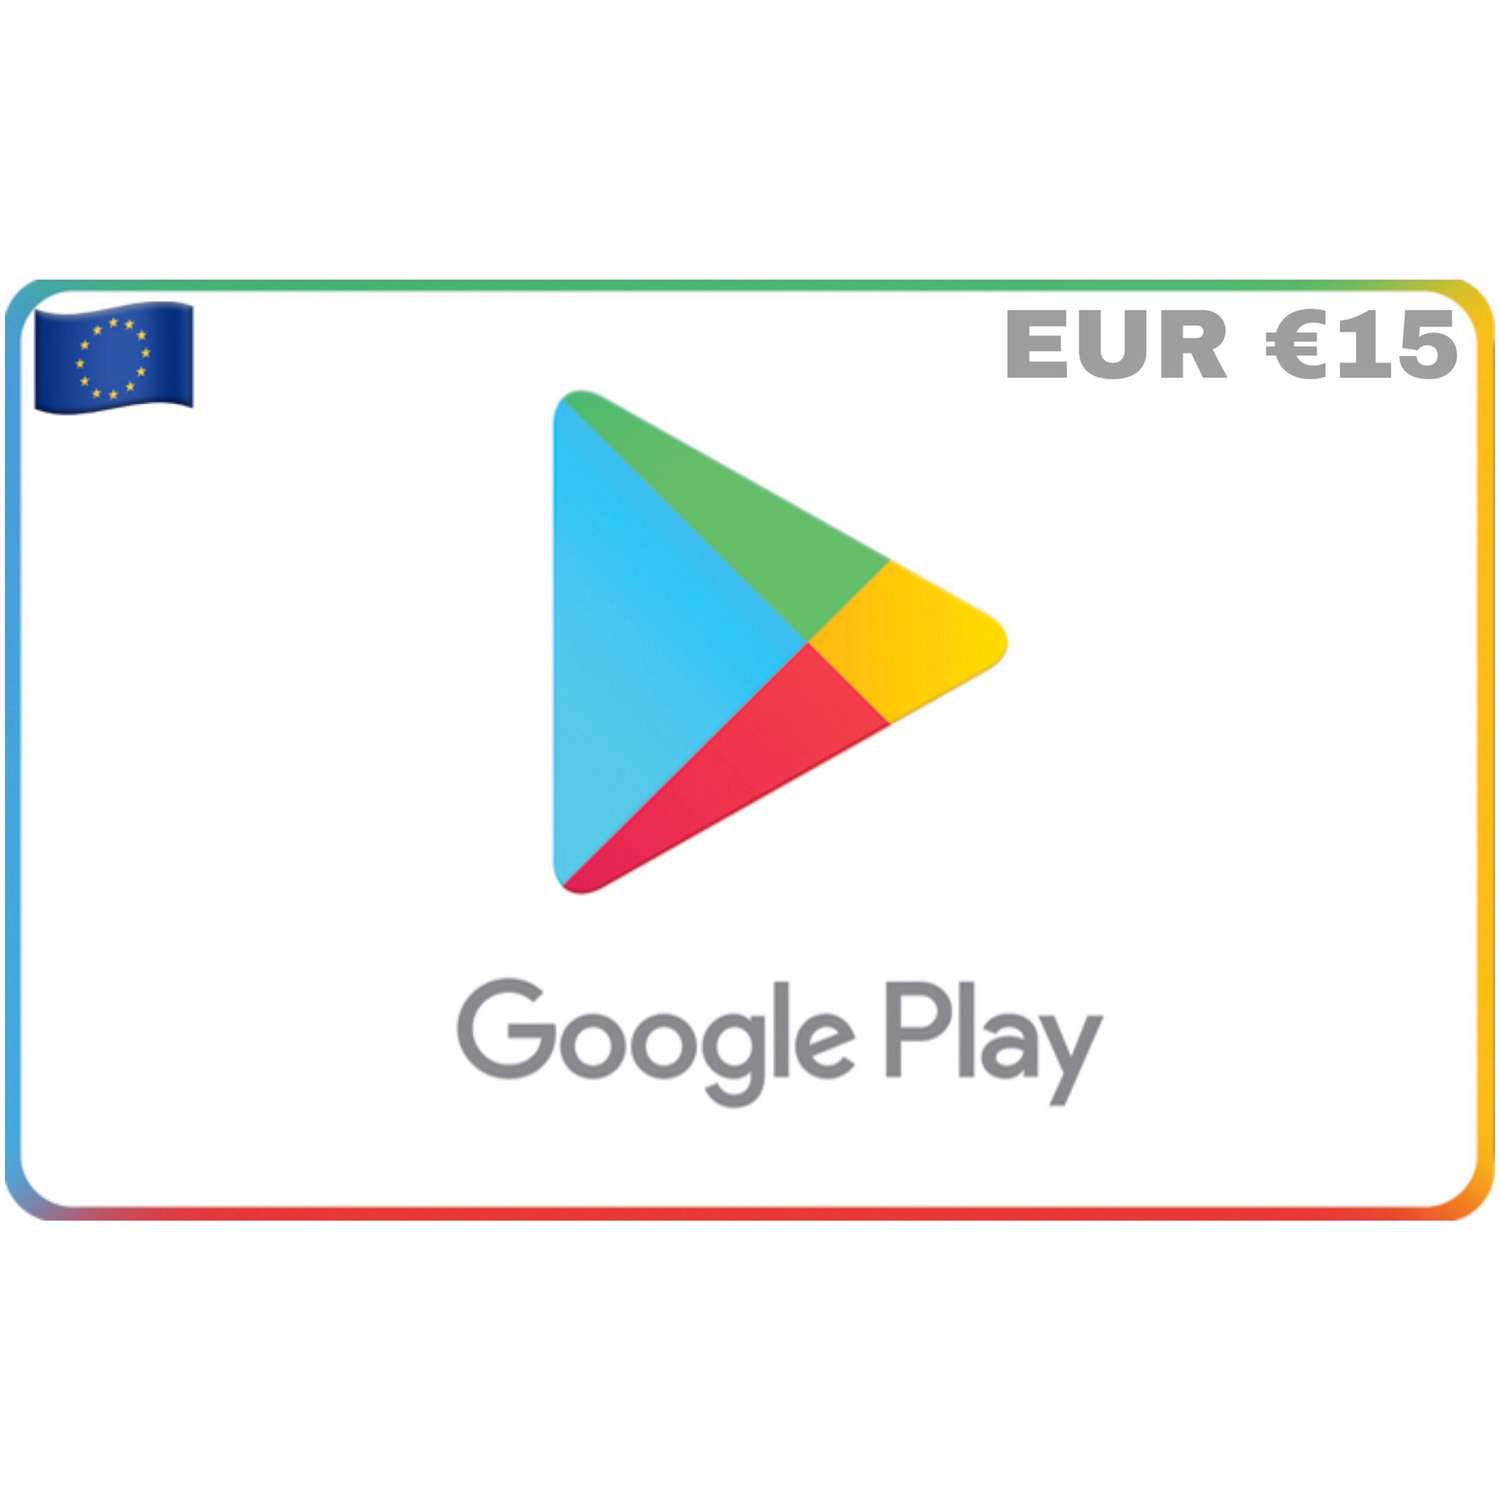 Google Play Europe EUR €15